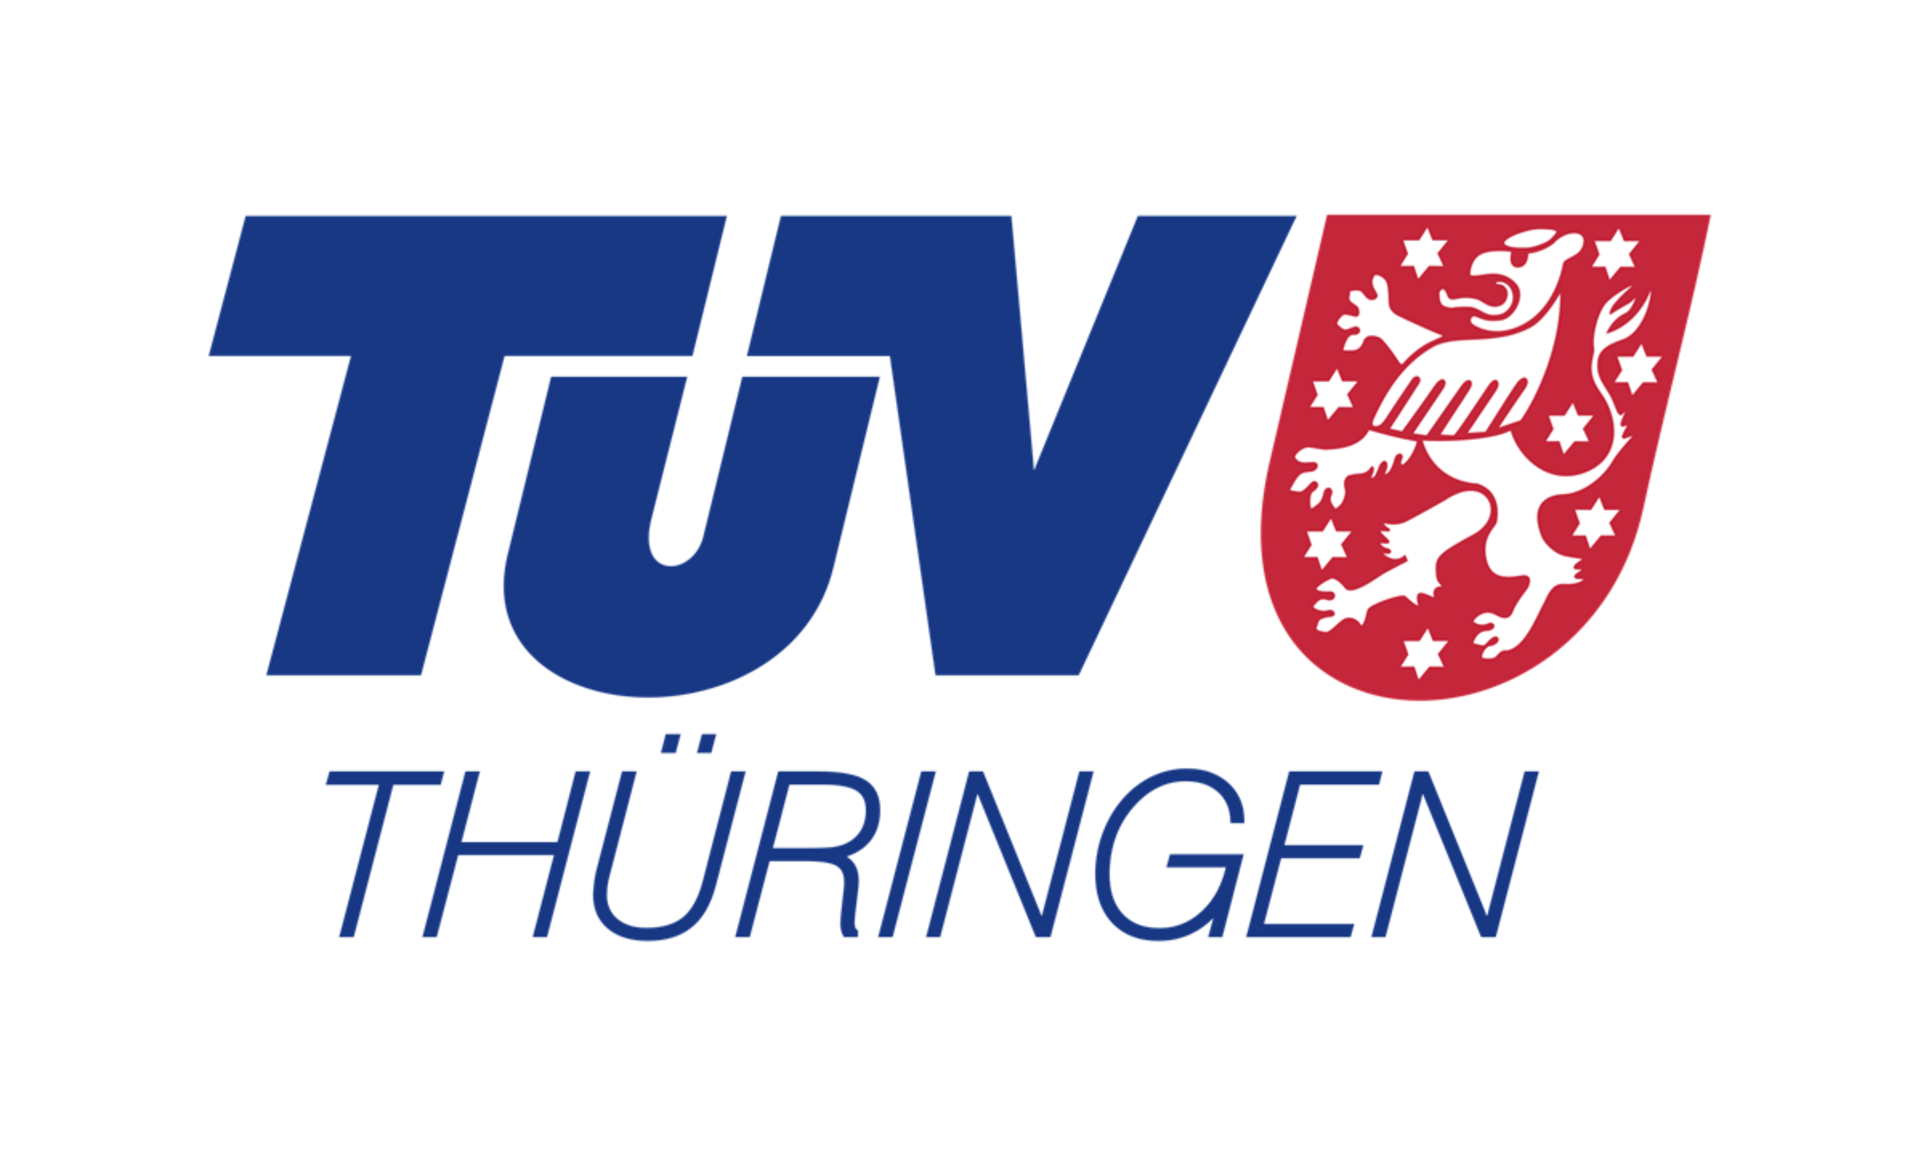 Logo TÜV Thüringen